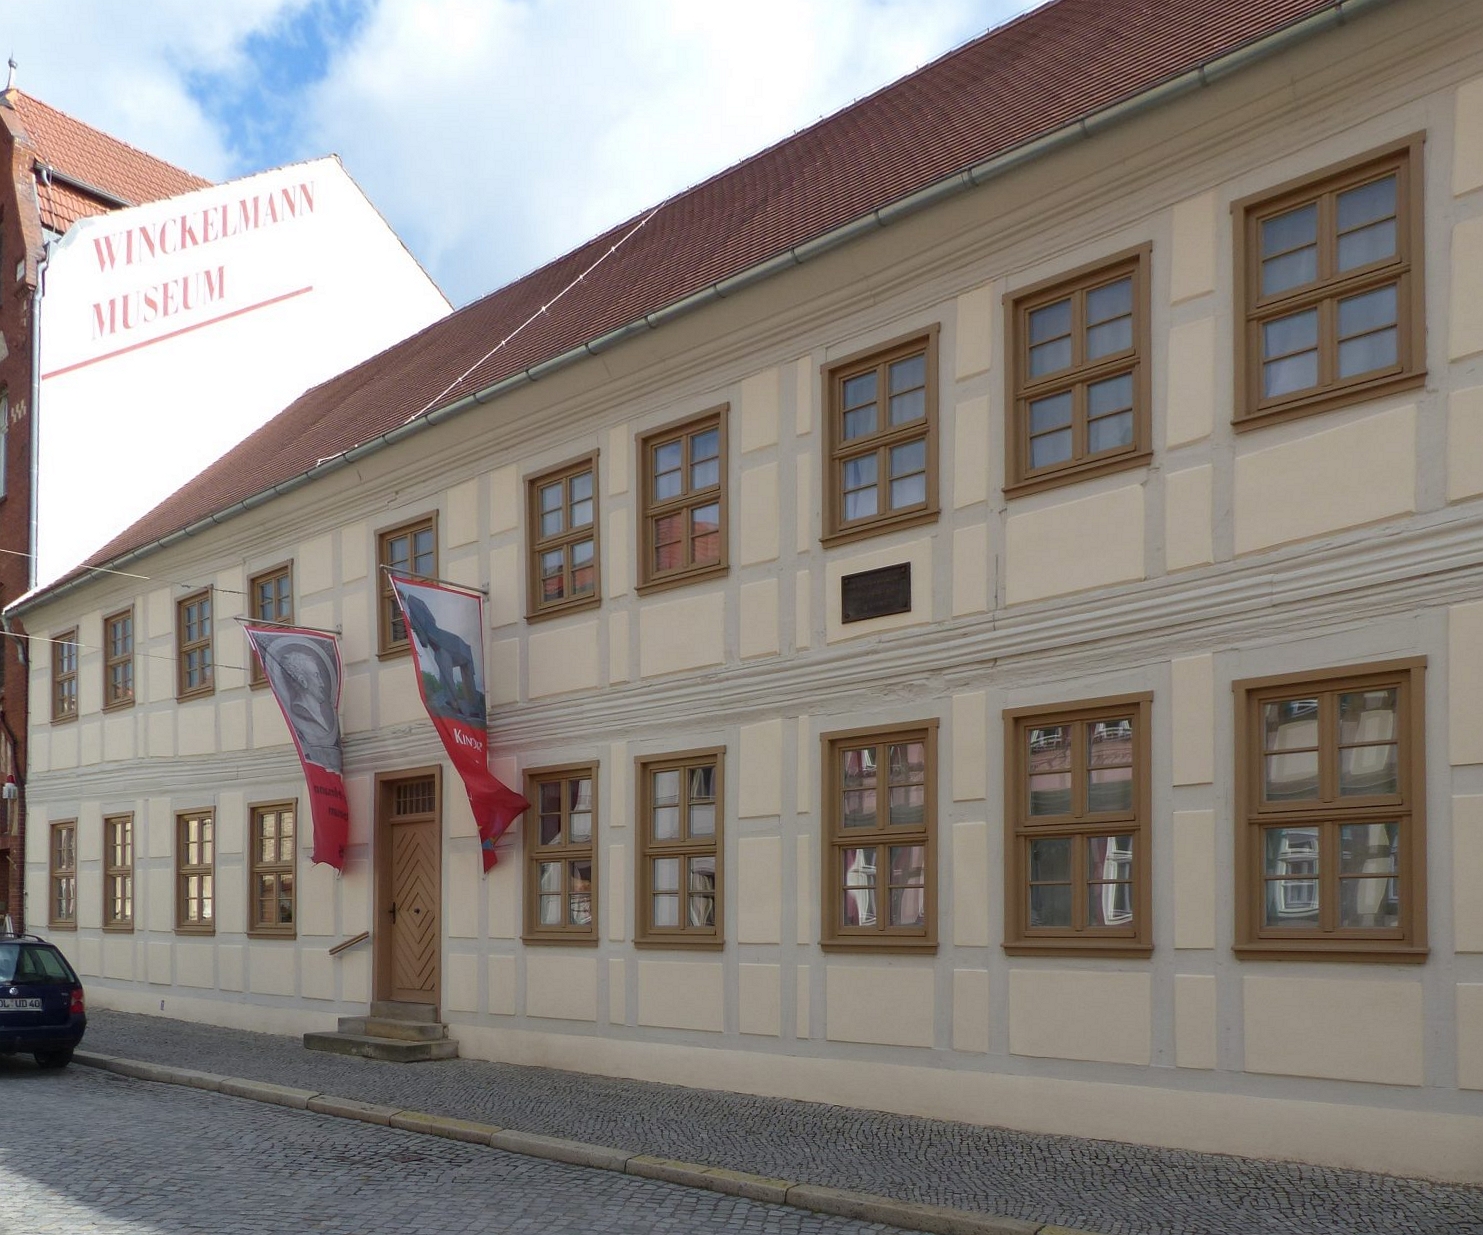 Hier sieht man das Winckelmann-Museum in Stendal, Foto: D.Weirauch